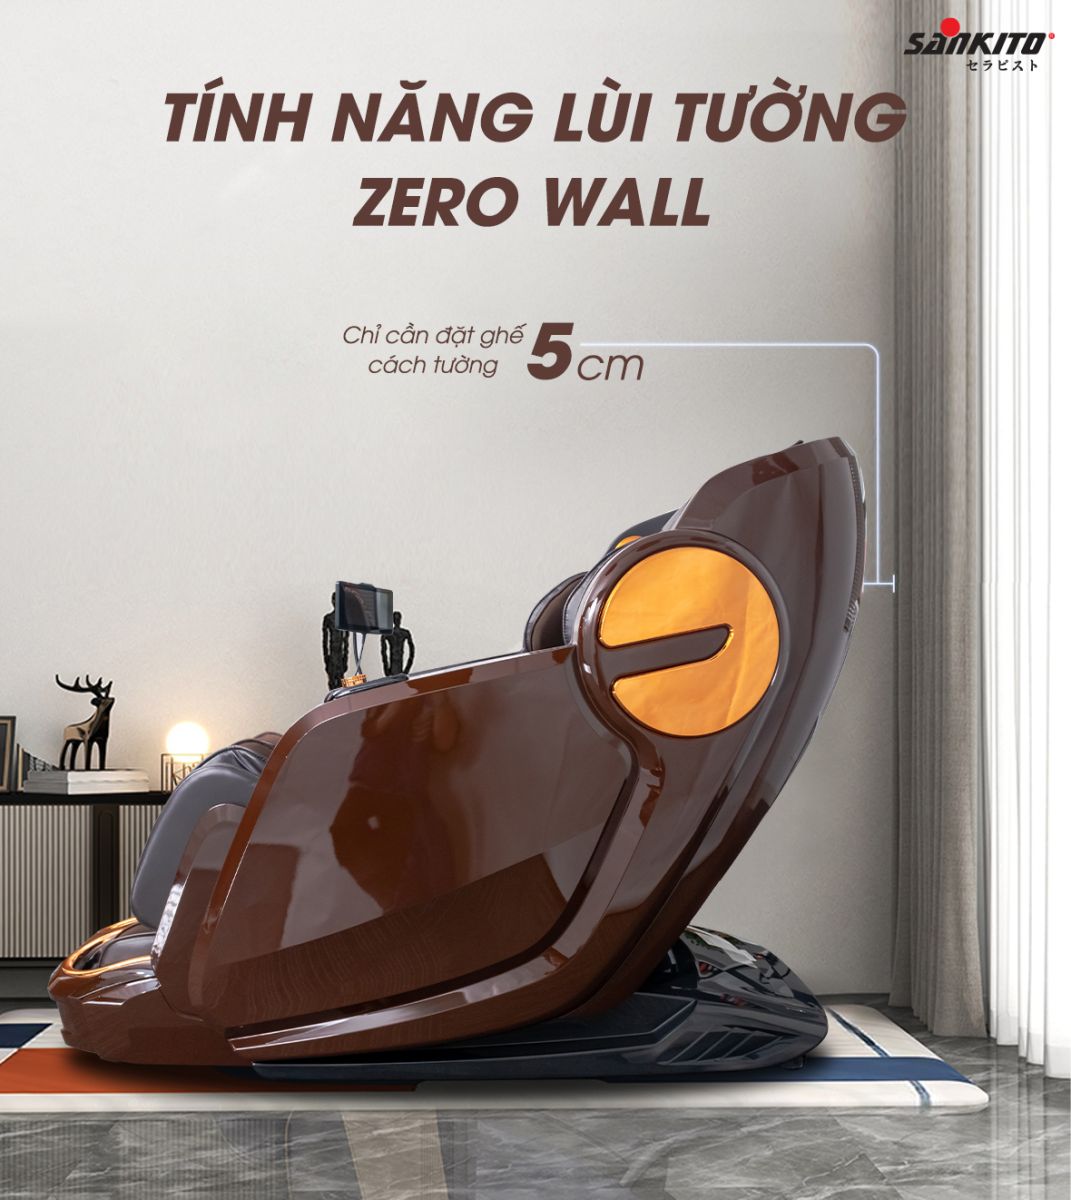 Ghế massage Sankito S-750/379 Tính năng lùi tường Zero Wall